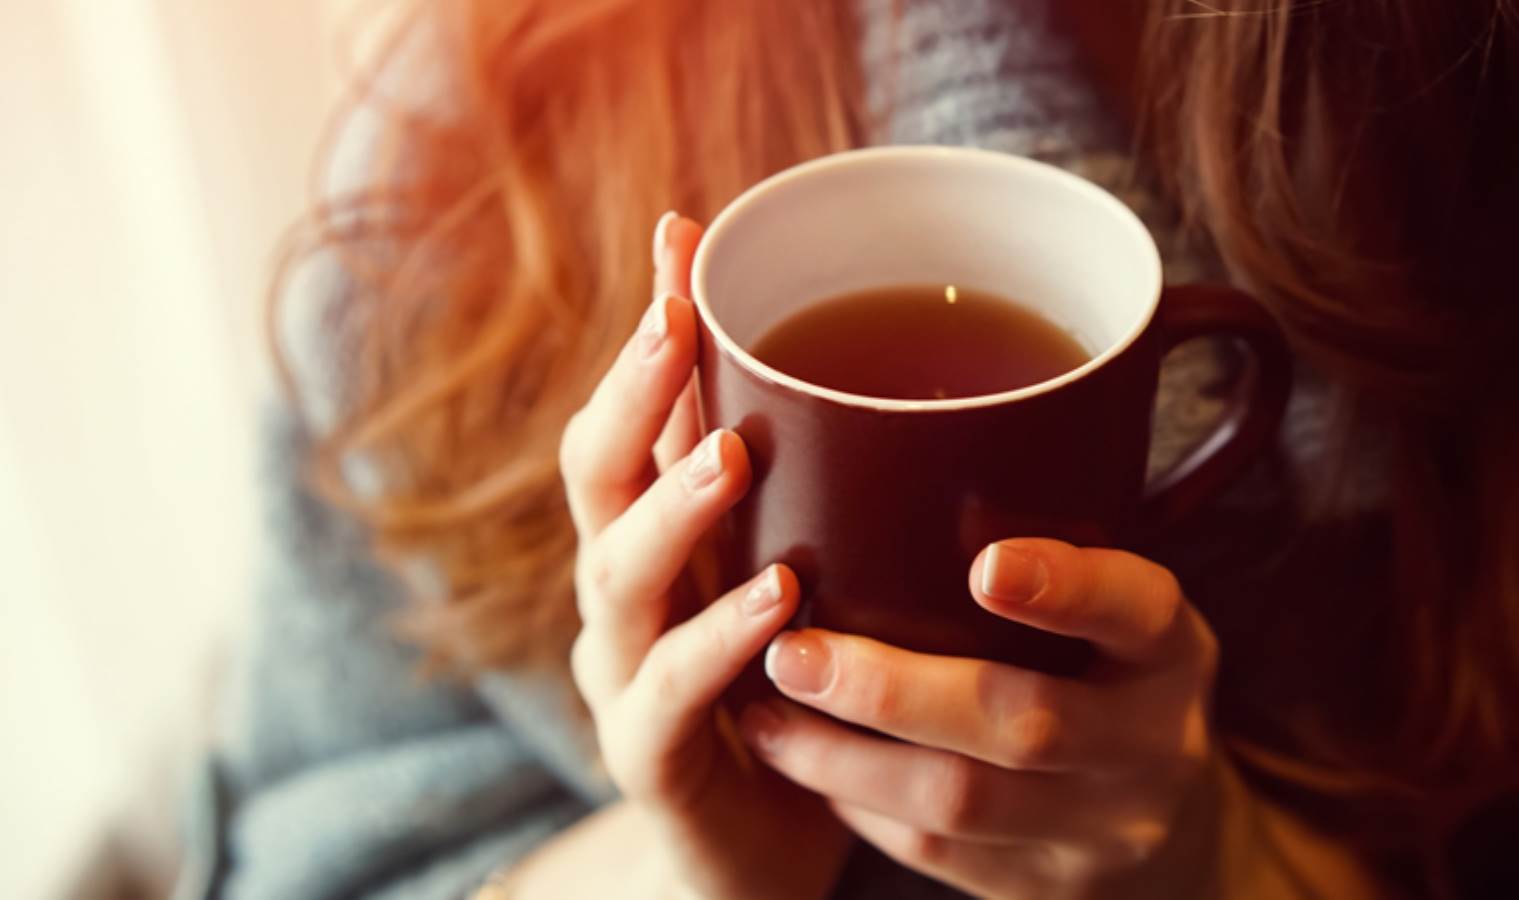 Uzmanlardan çay tehlikesine çağrı: Çay değil kanser içiyor olabilirsiniz...